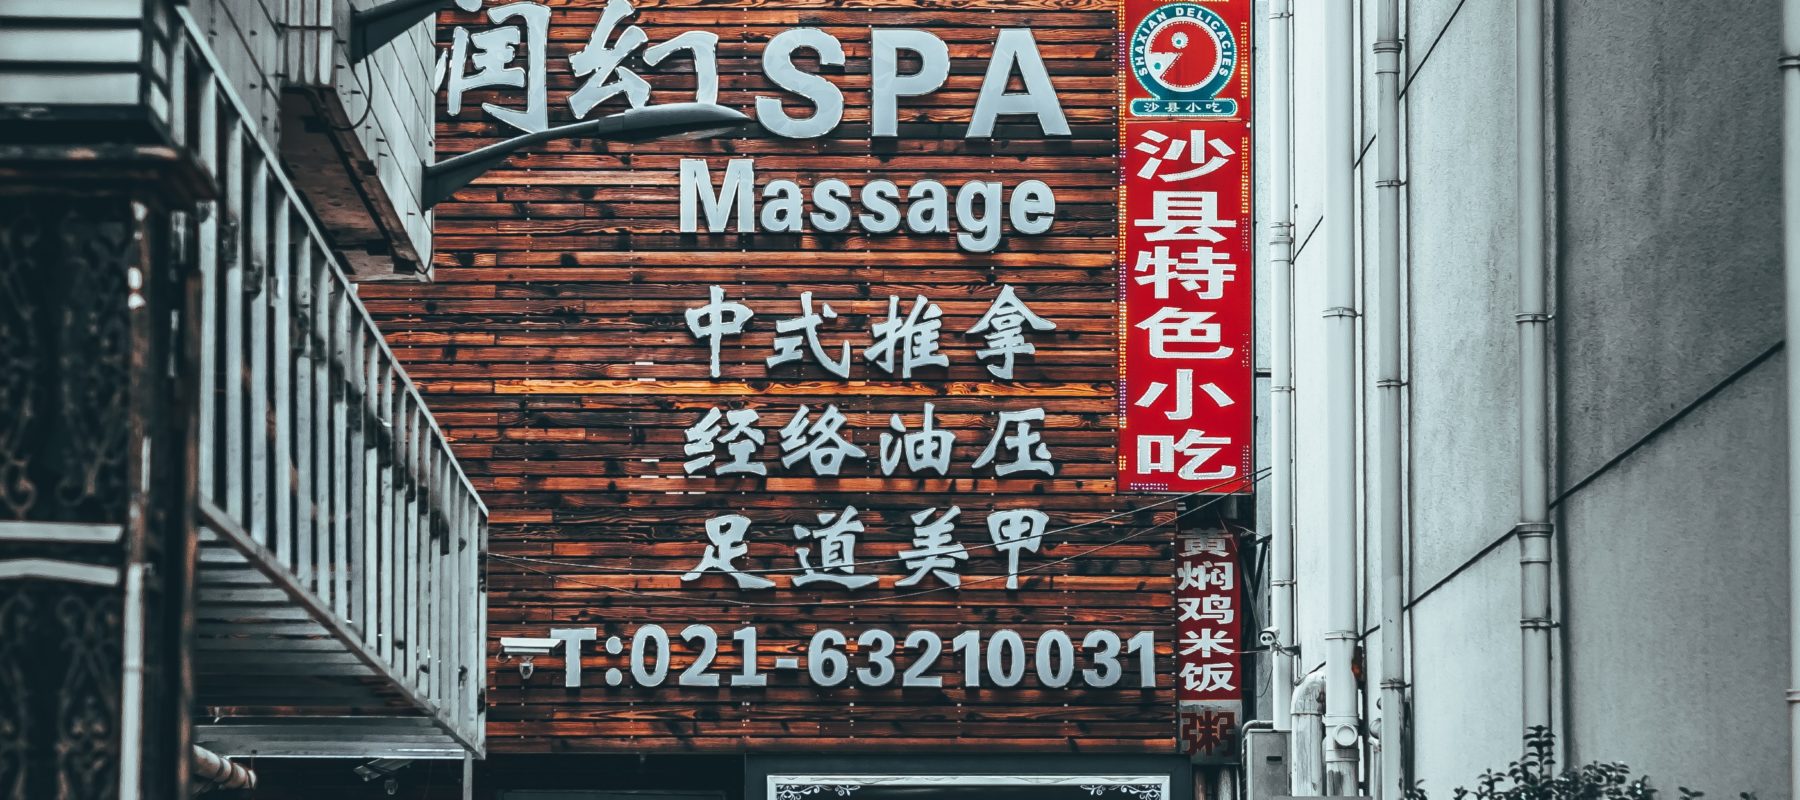 Massage japonais amma shiatsu paris